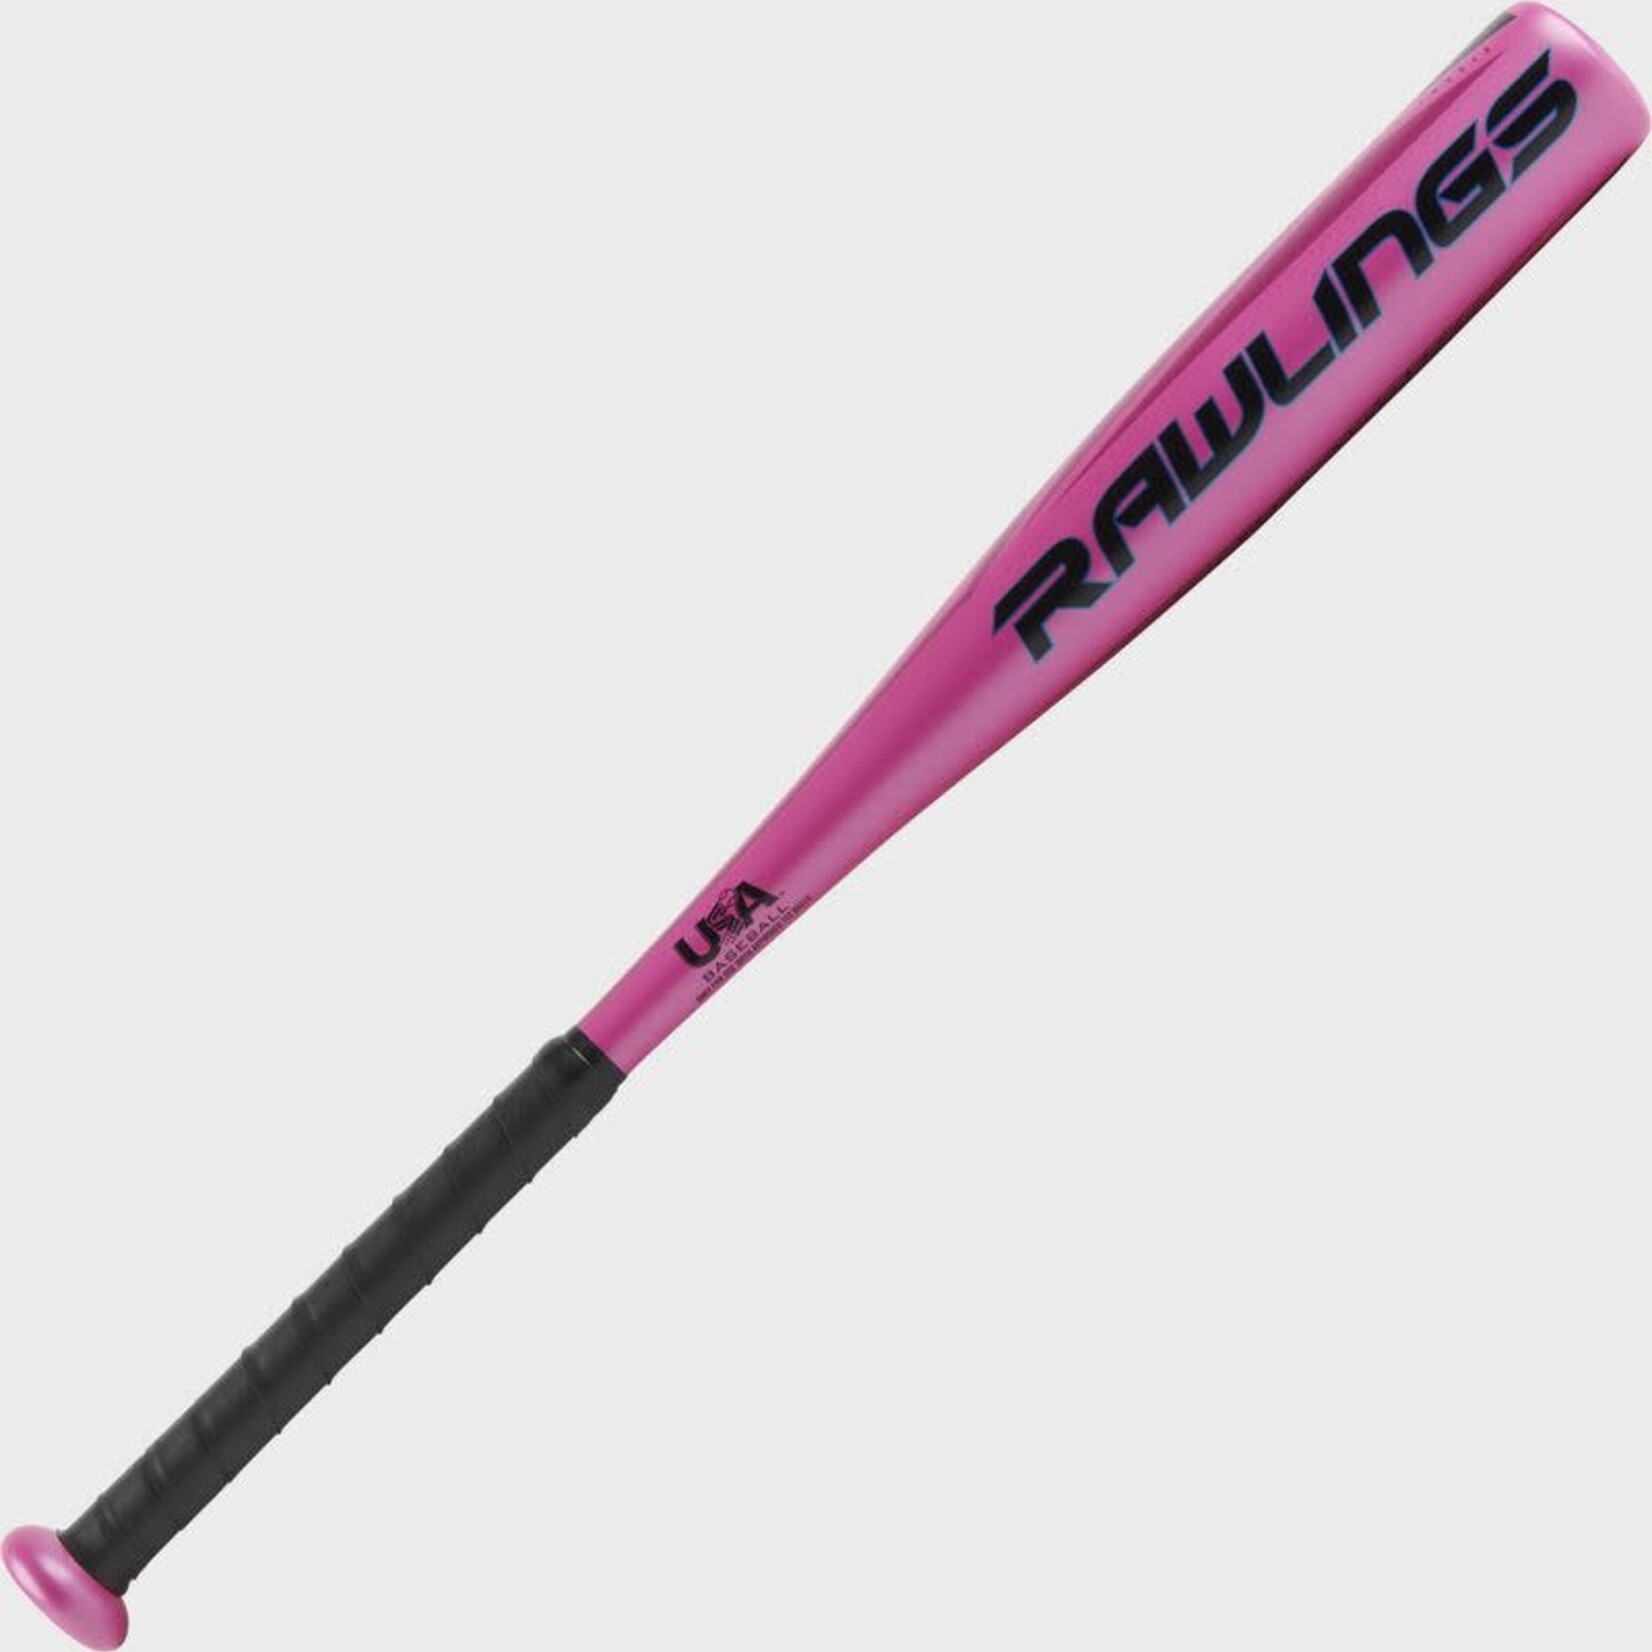 Rawlings Rawlings Baseball Bat, Storm Tee Ball Alloy TB3S12, -12